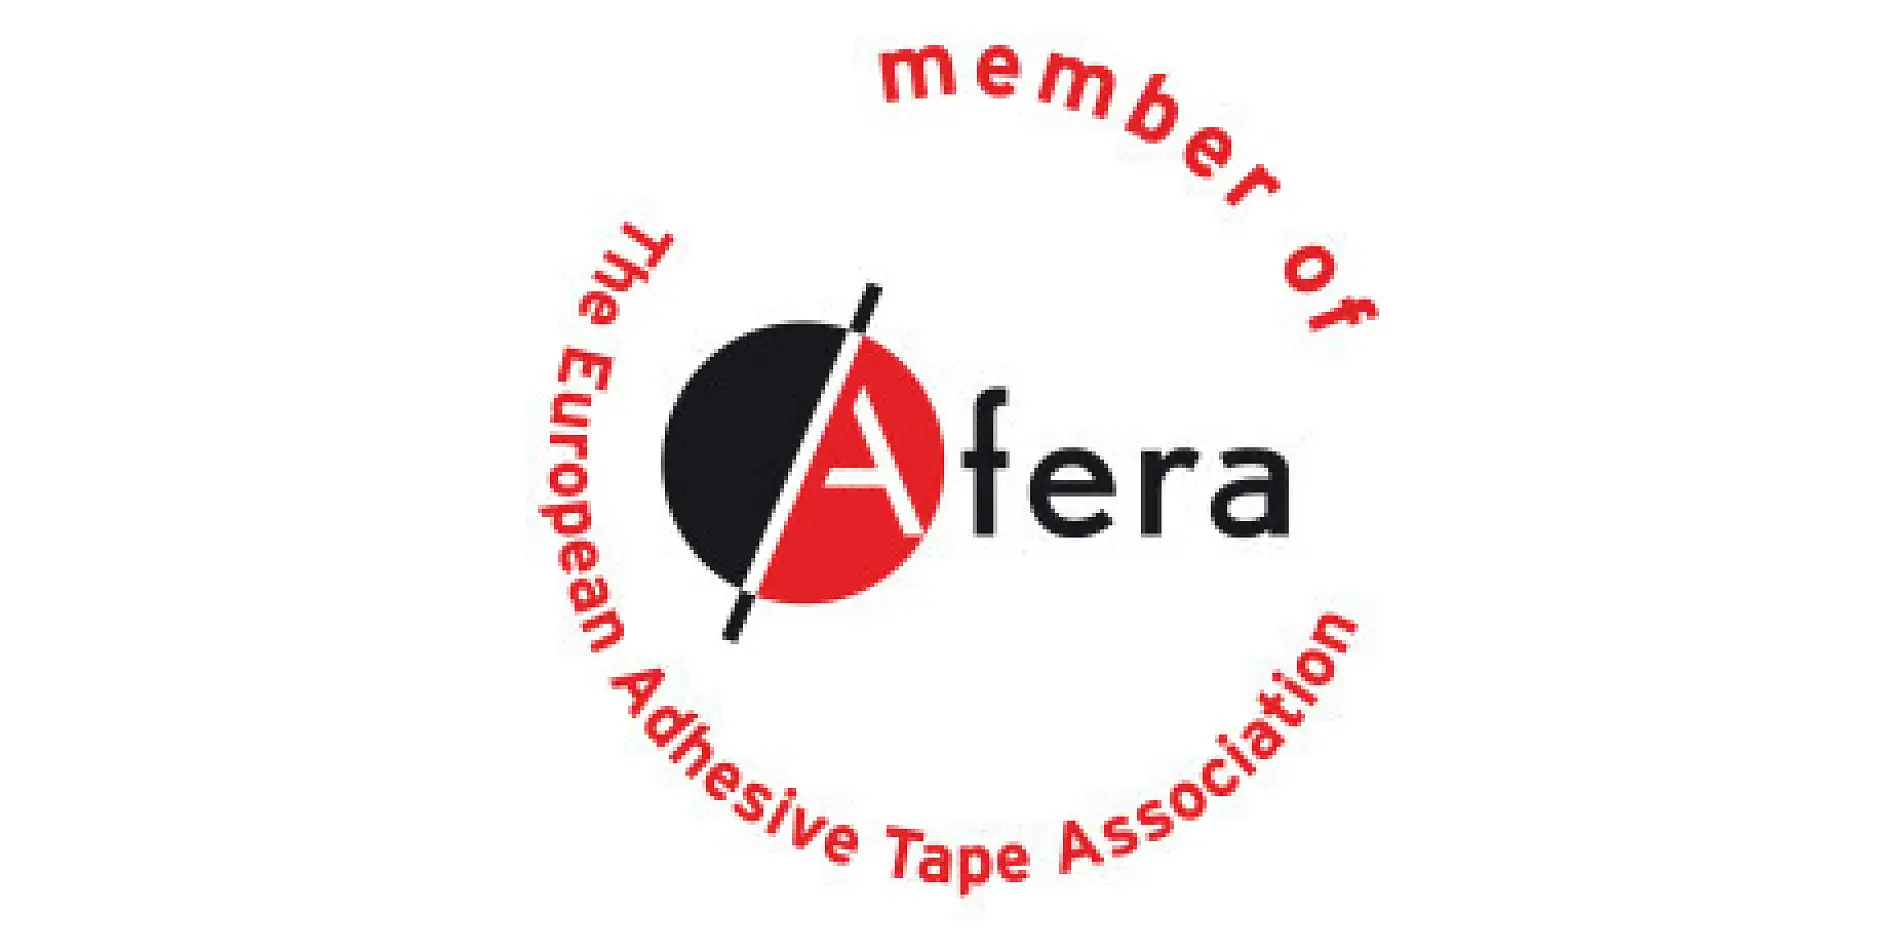 tesa es miembro de Afera, la Asociación de Fabricantes Europeos de Cinta Adhesiva. Entre los afiliados hay fabricantes, proveedores de materias primas y maquinaria, convertidores (tales como empresas de impresoras, cortadoras, troqueladoras y laminadoras de cinta adhesiva) y organizaciones nacionales.